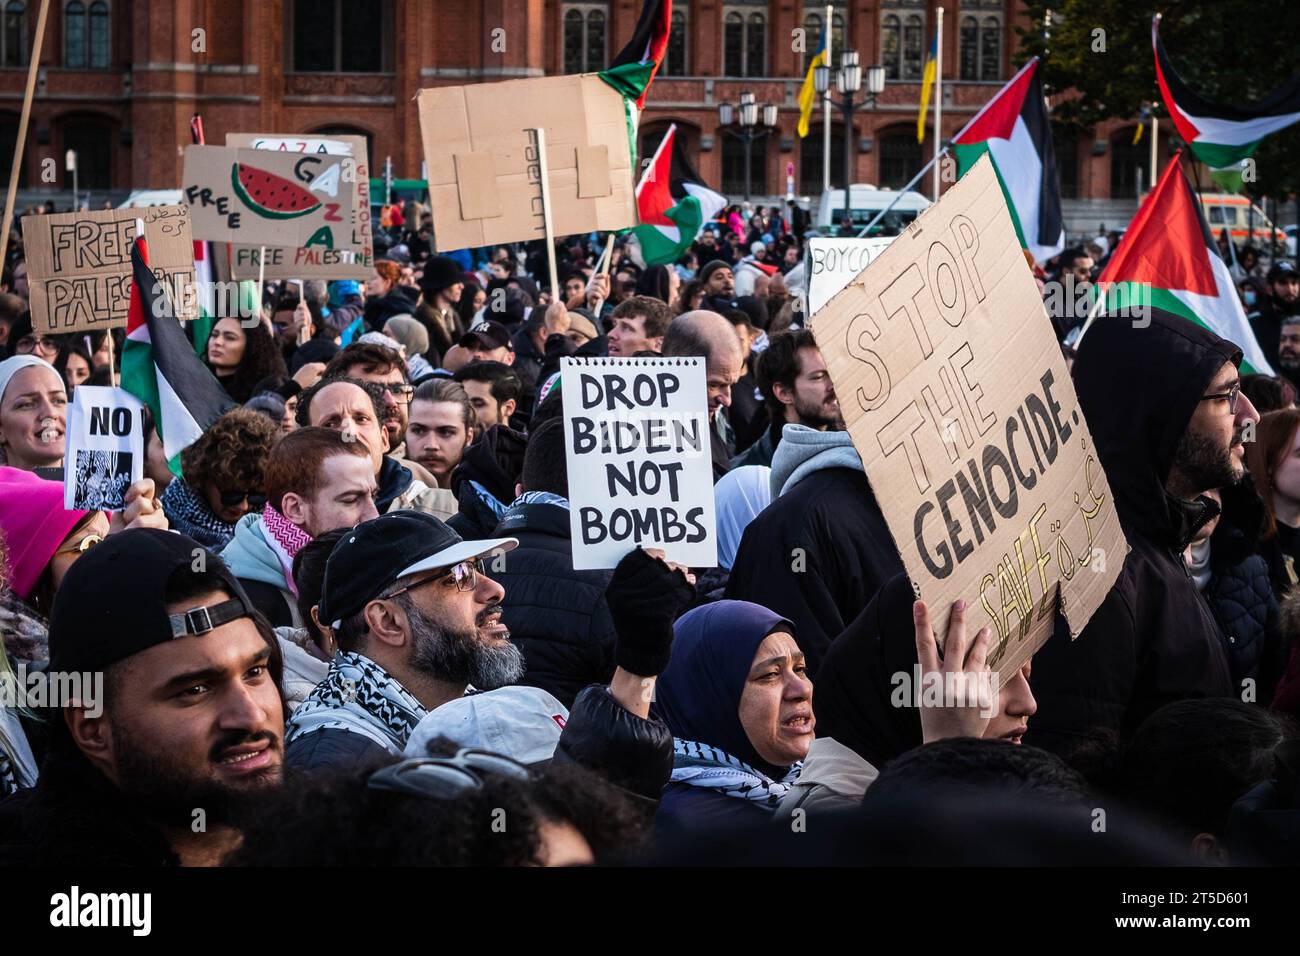 Berlino, Germania - 4 novembre: Persone con bandiere palestinesi e firmano la manifestazione della Palestina libera a Berlino Foto Stock